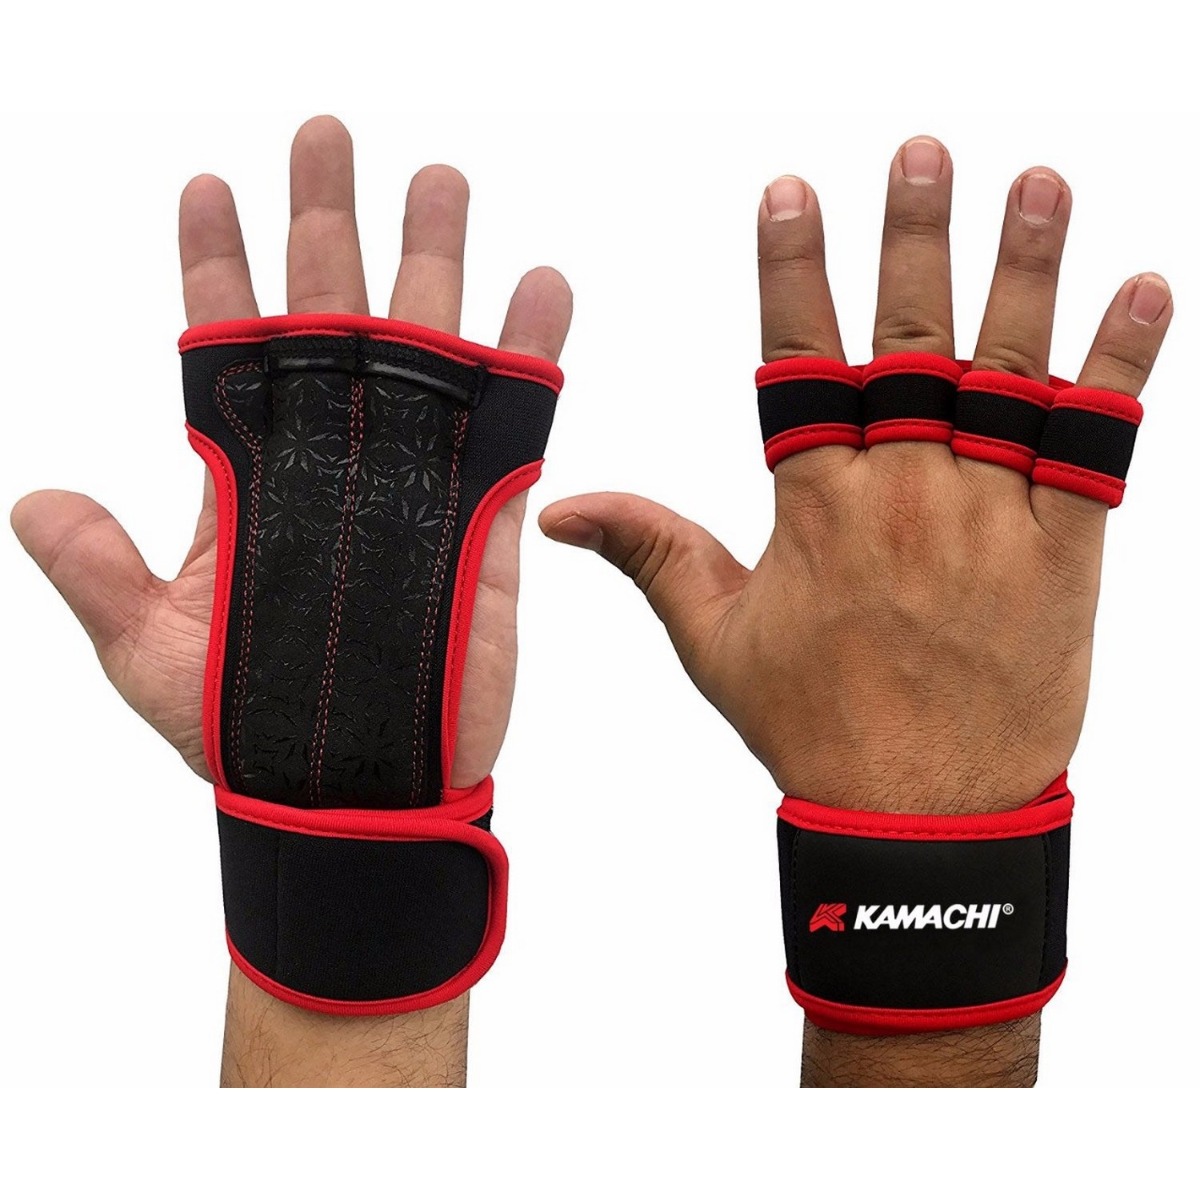 Kamachi FG-08 Fitness Gloves - Red